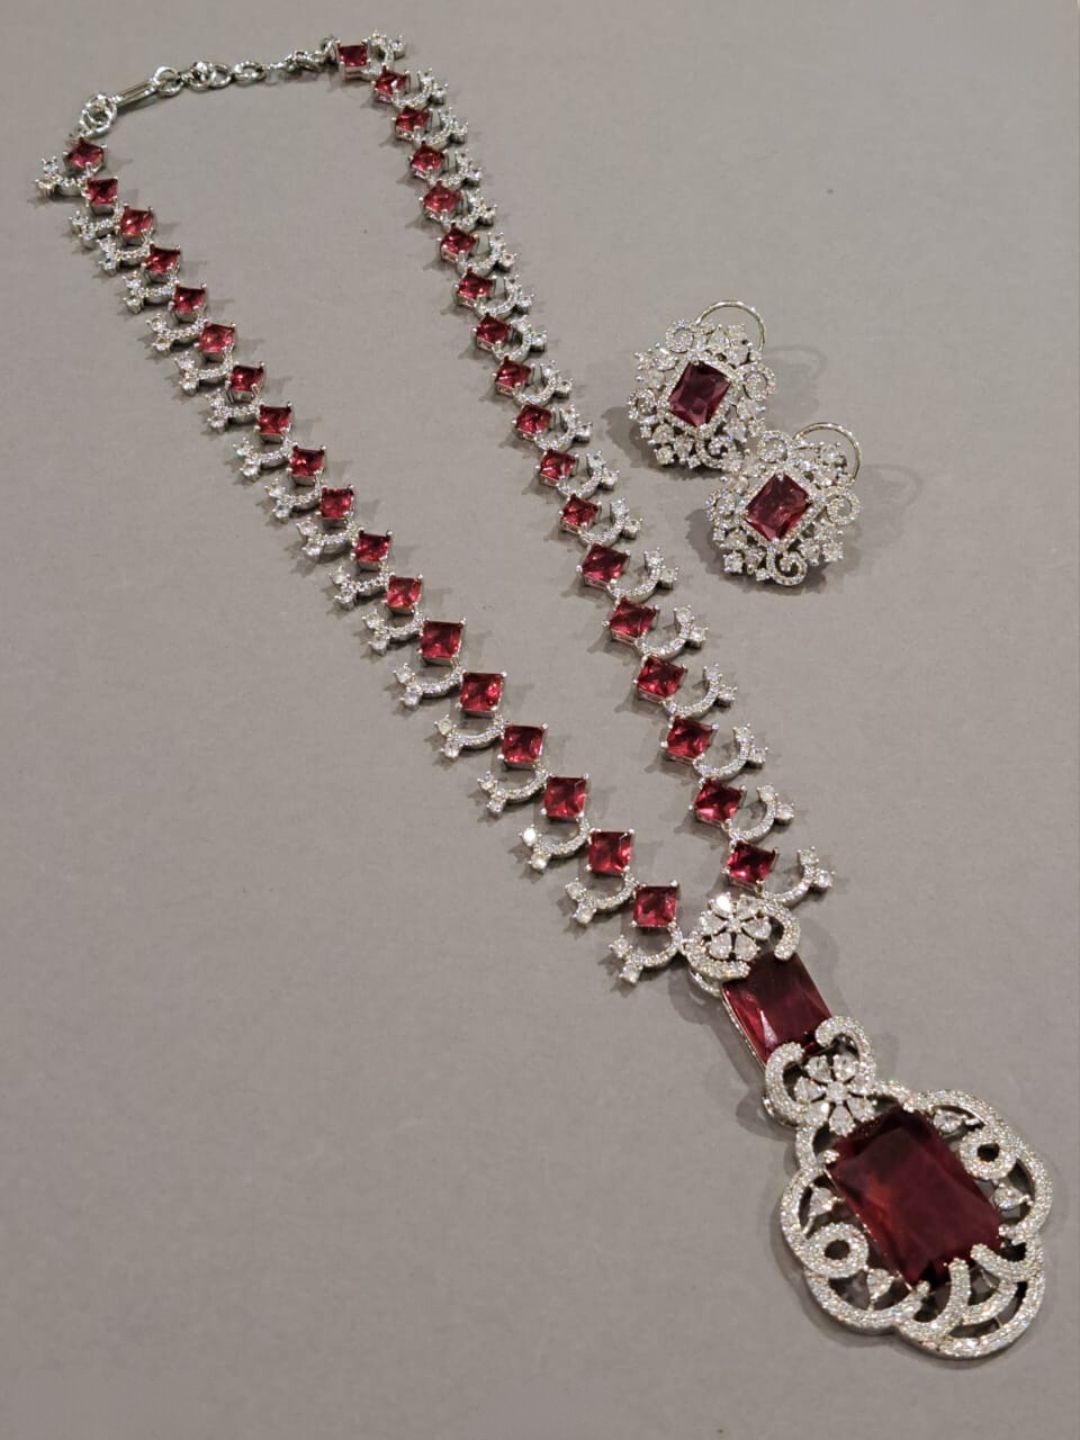 Ishhaara Neeta Ambani Inspired Doublet Emerald Long Necklace